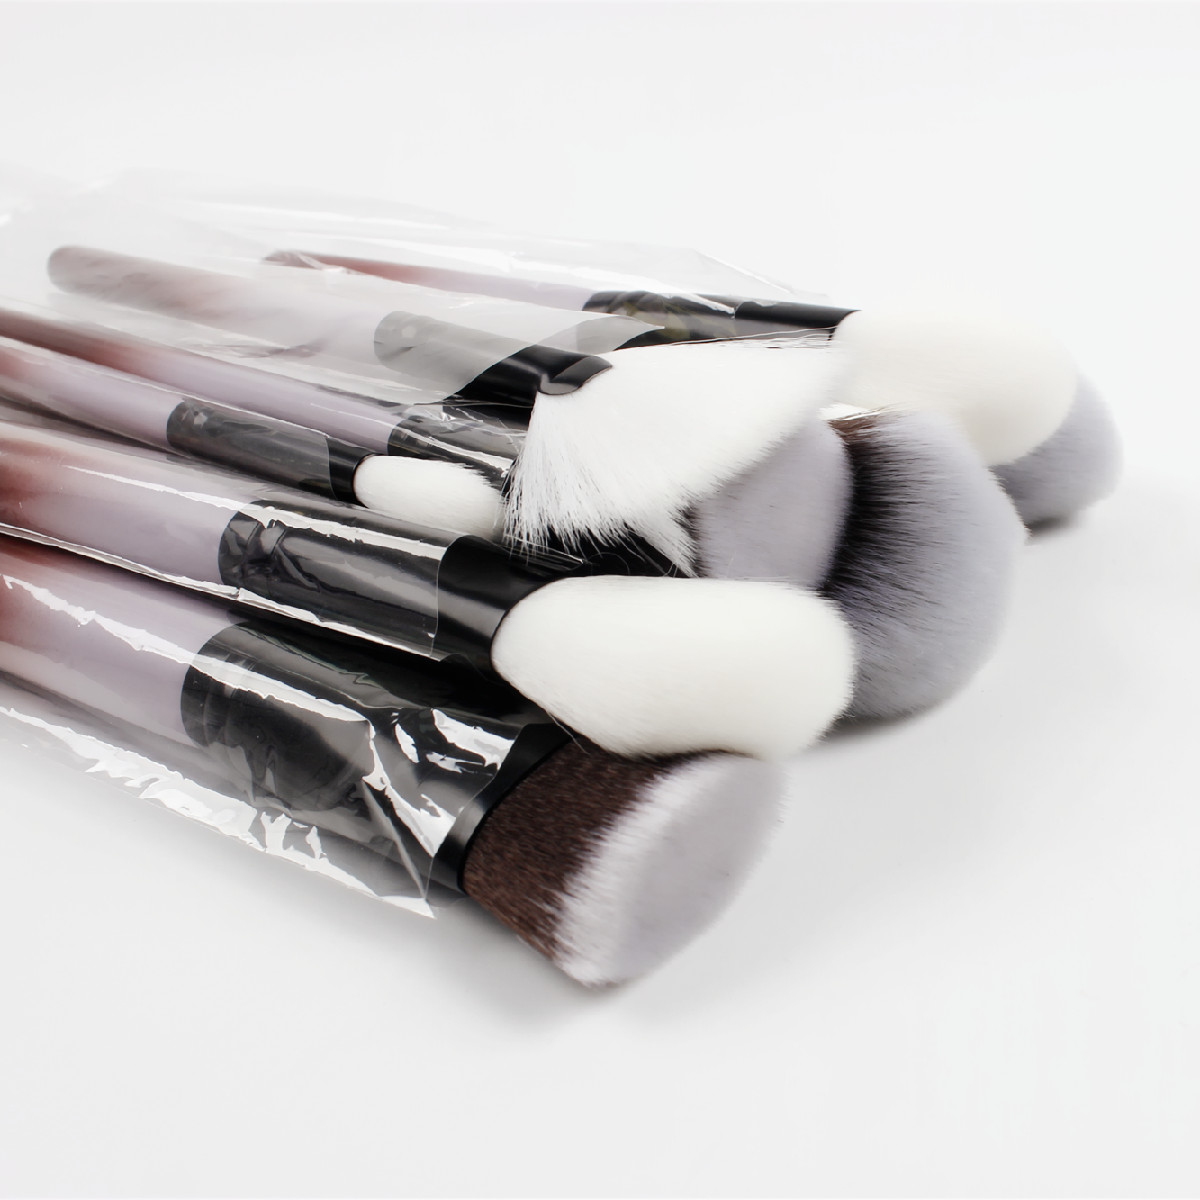 Suprabeauty dernière conception 18pcs set pinceaux de maquillage pour les yeux set pinceaux ombre à paupières outils de beauté vente chaude